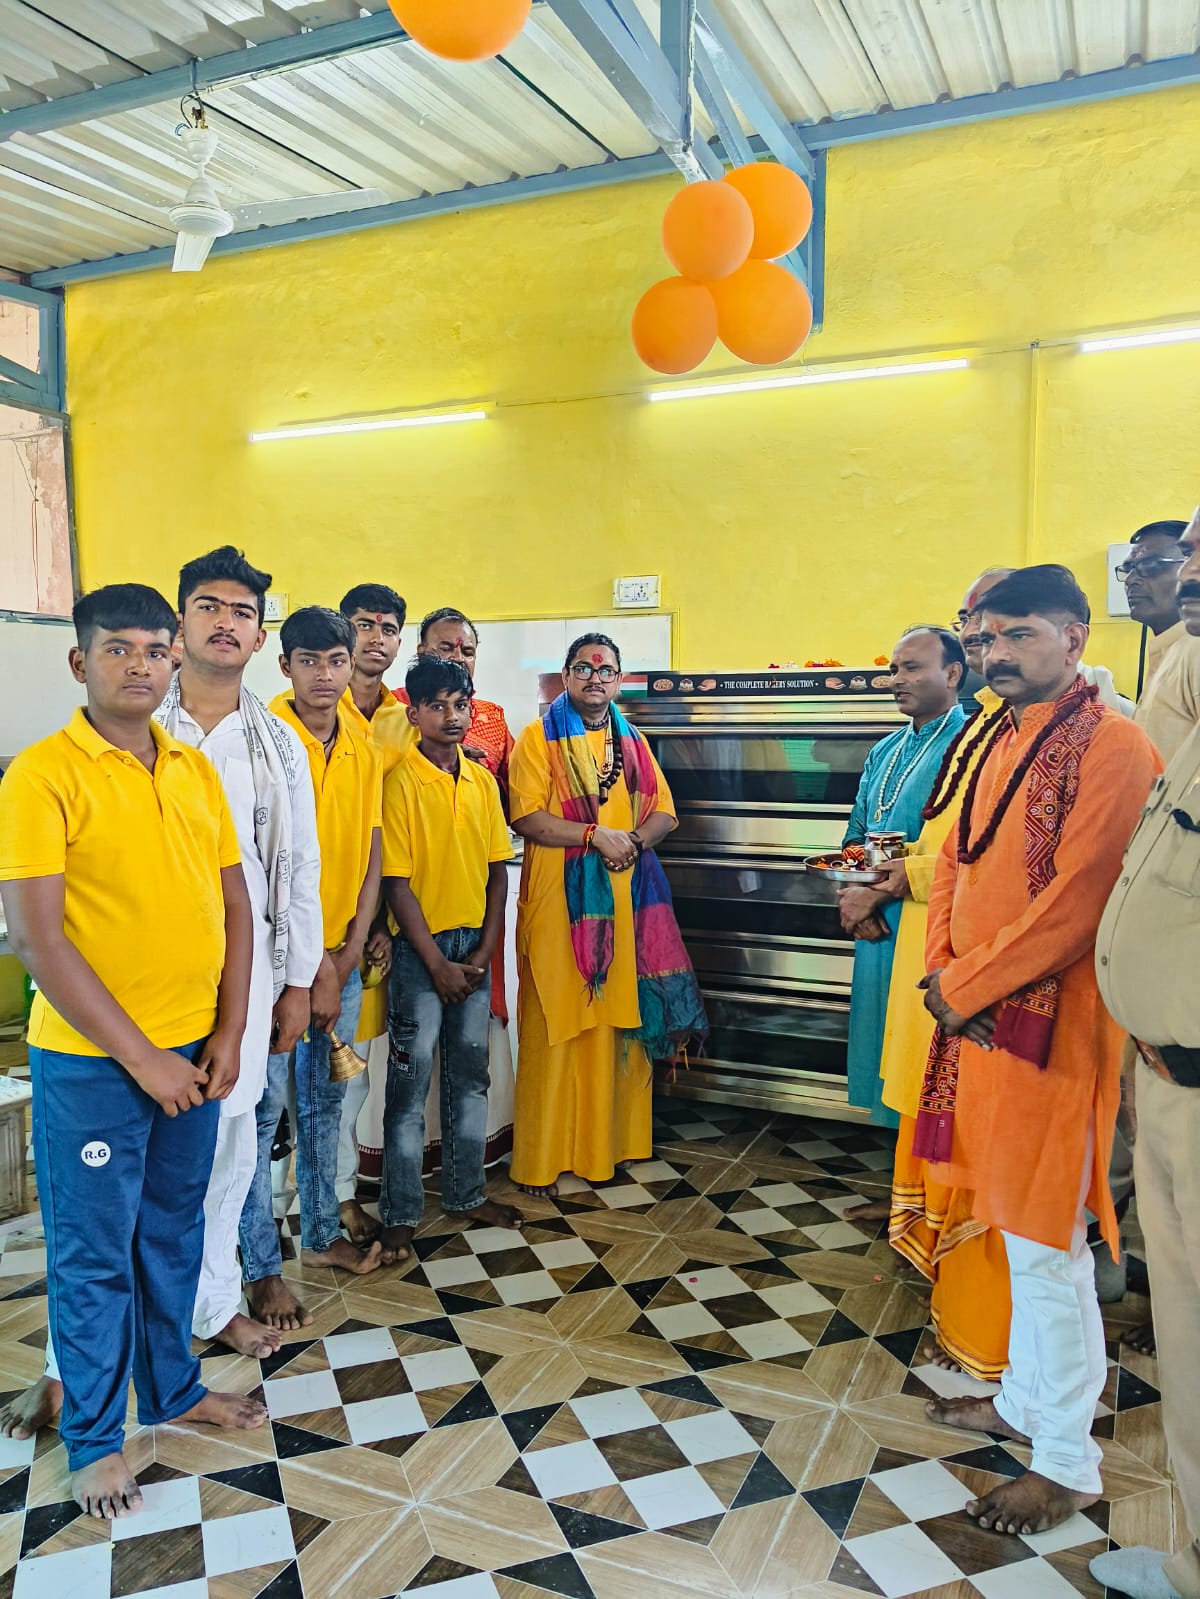 हरिद्वार जिला कारागार में श्रीमद् देवी महापुराण का शुभारंभ